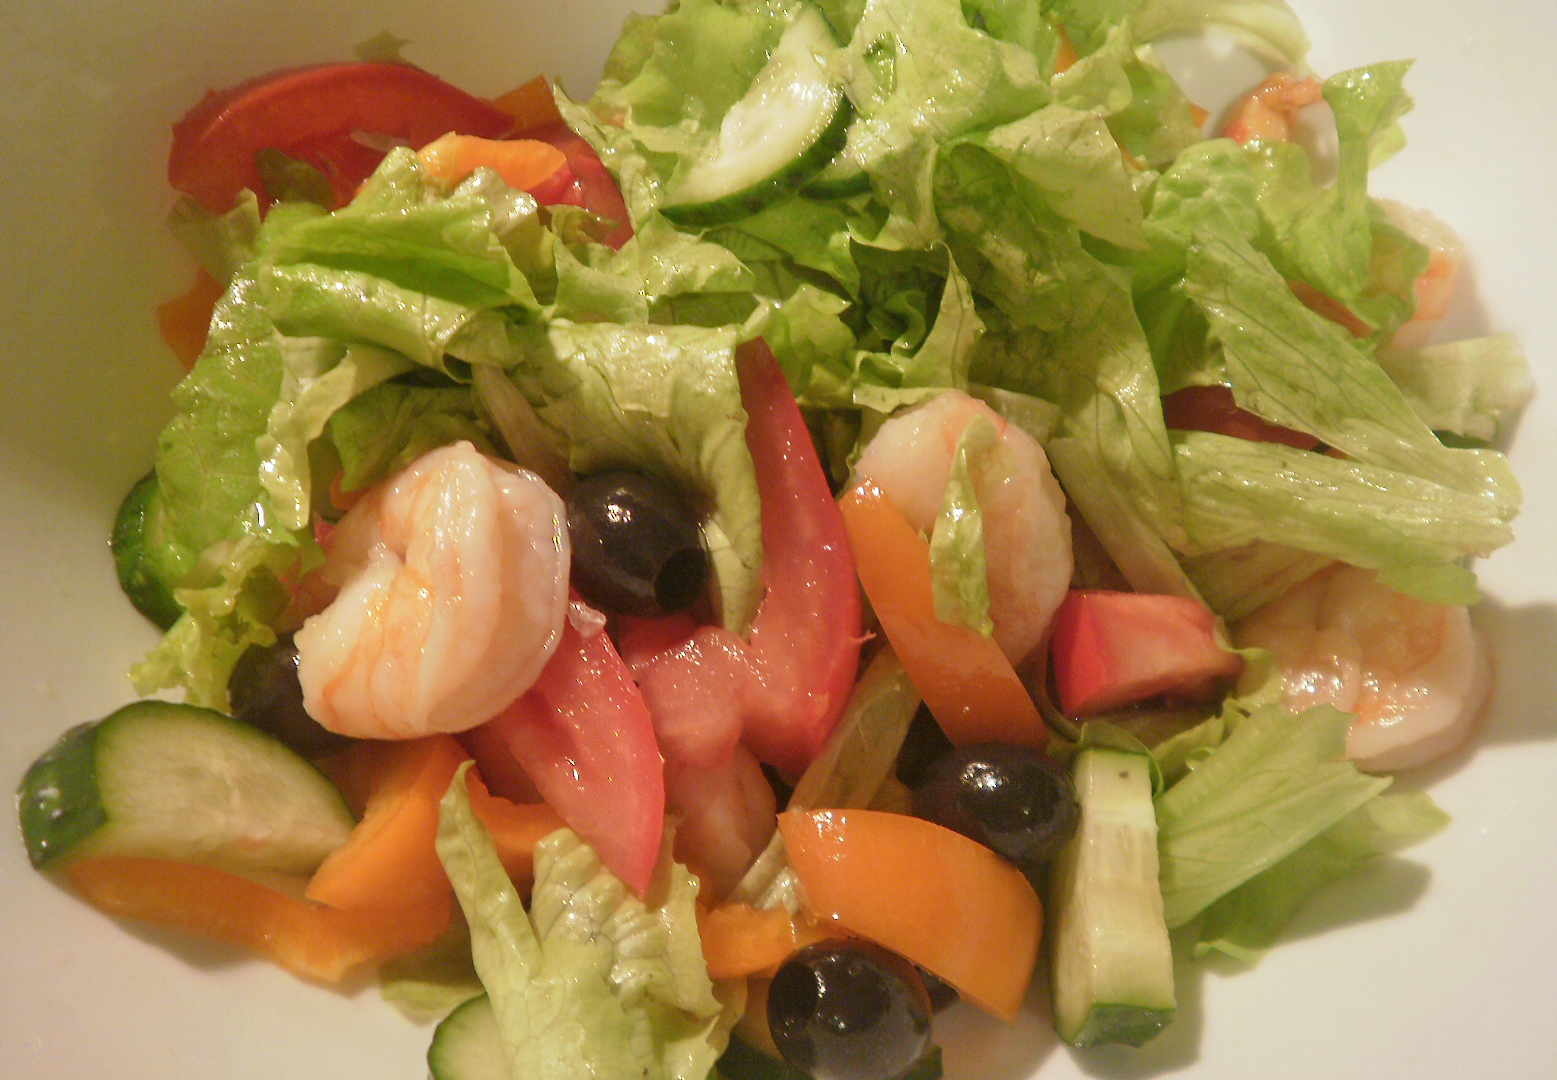 Салат из свежих овощей с маслом